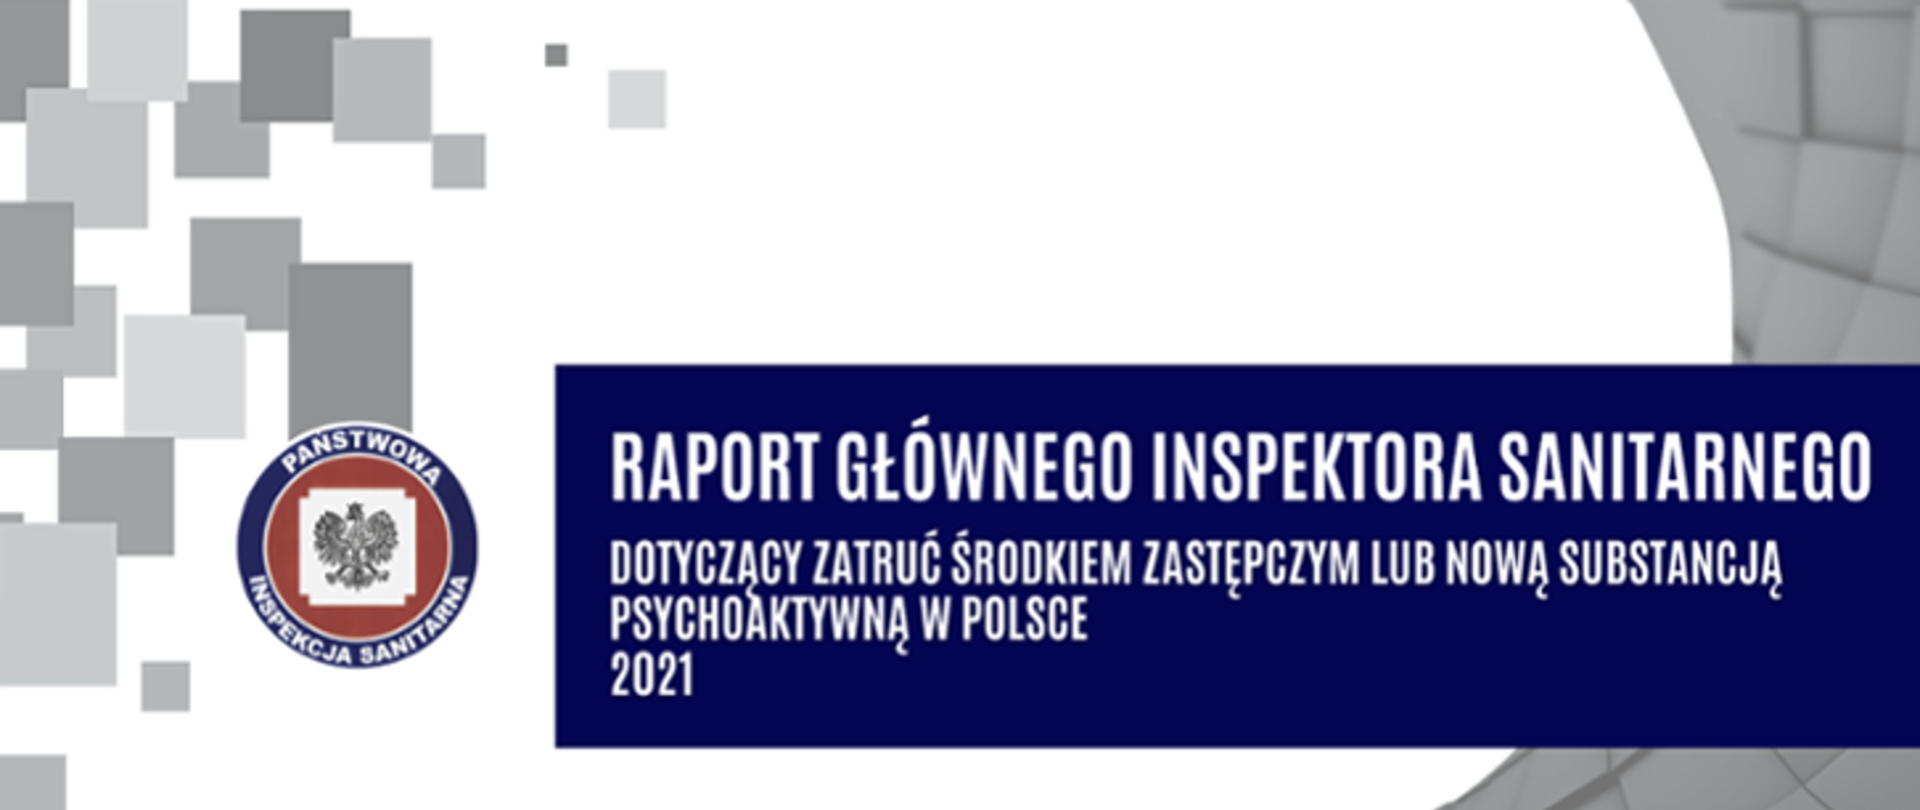 Obraz zawiera logo Państwowej Inspekcji Sanitarnej oraz biały napis na niebieskim tle: "Raport Głównego Inspektora Sanitarnego"